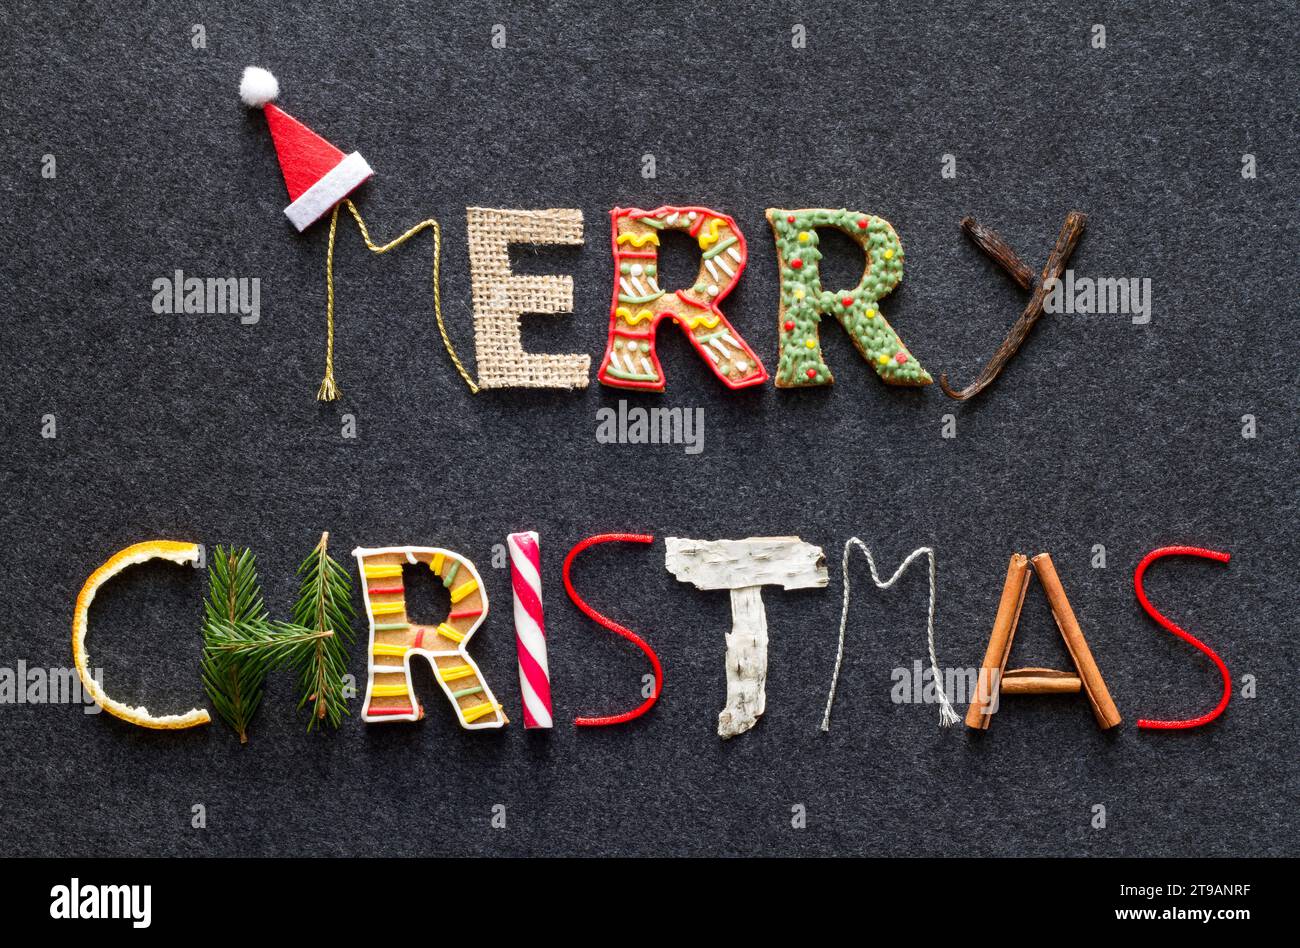 Merry christmas-Schriftzug aus verschiedenen weihnachtsprodukten auf dunklem Hintergrund Stockfoto